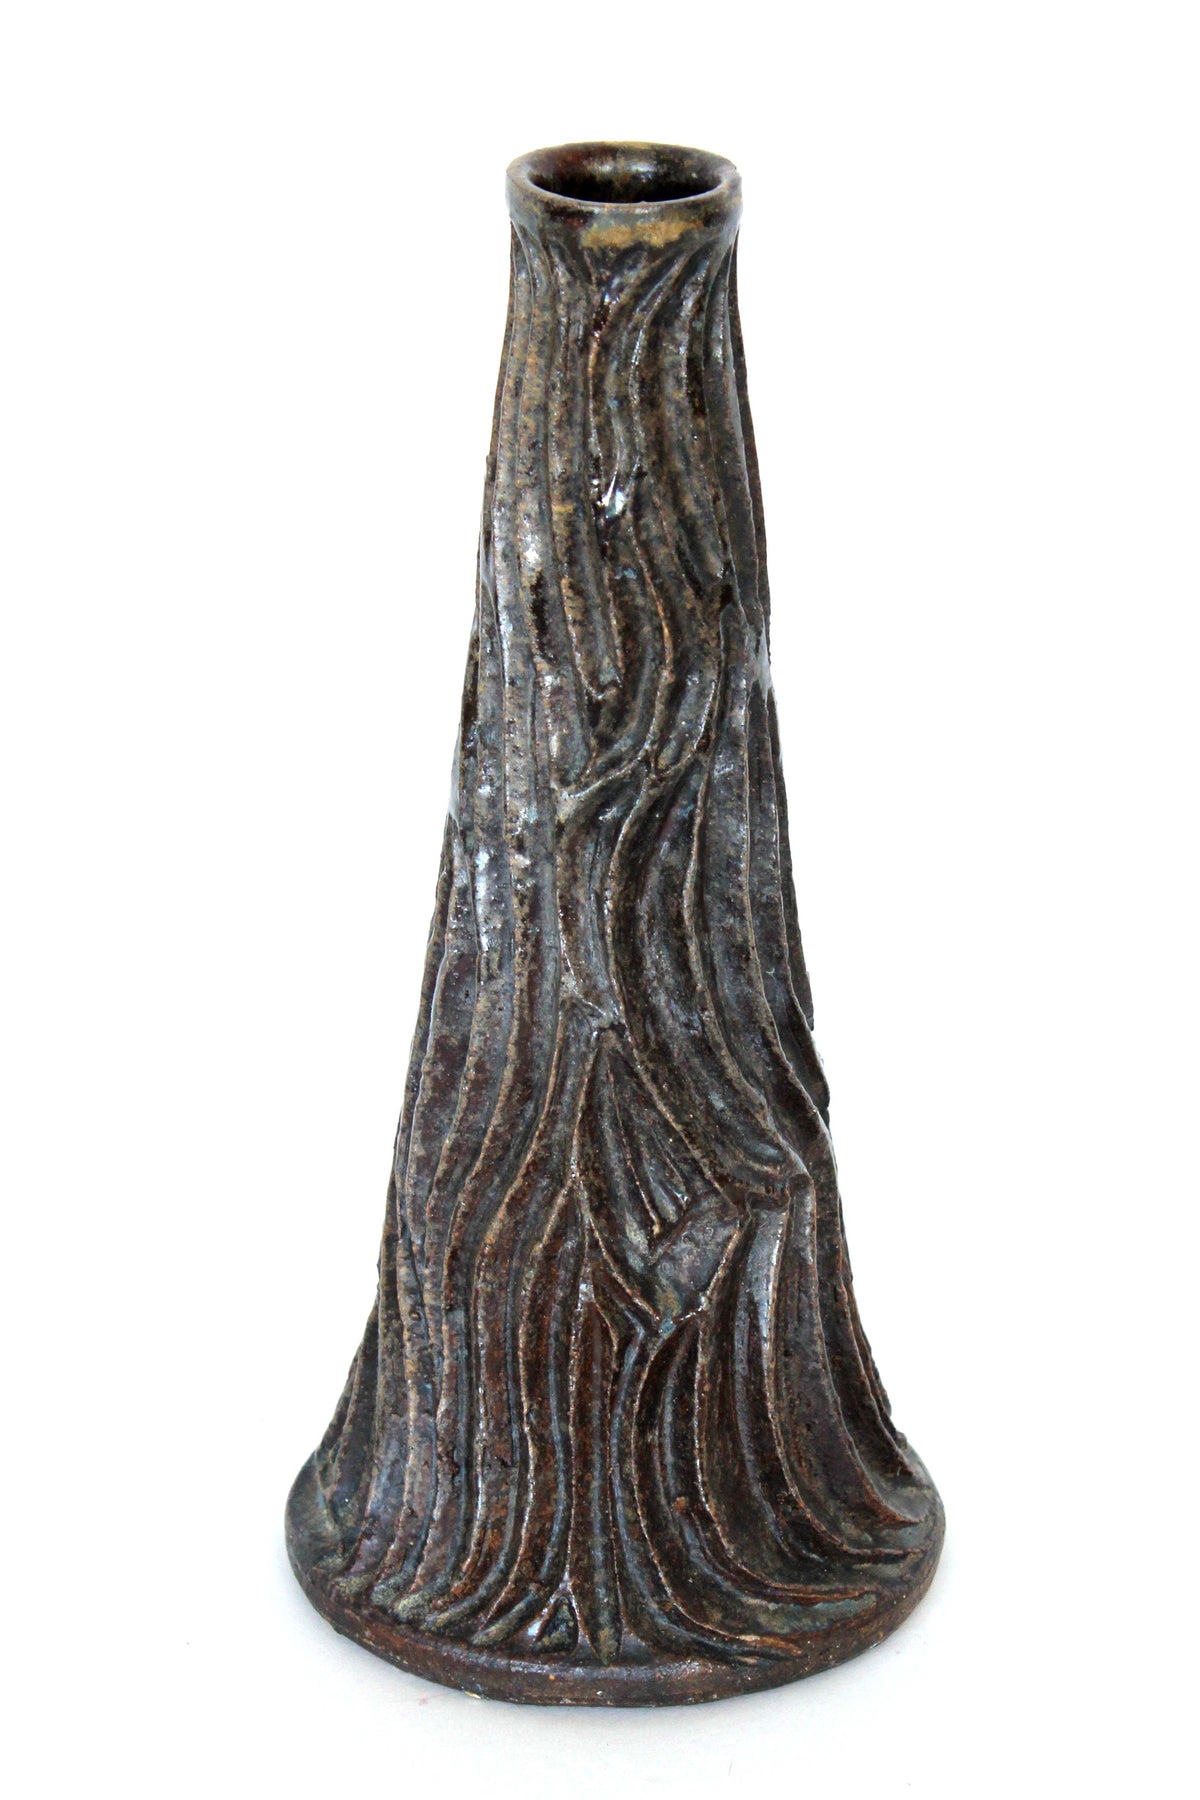 Brown Vessel with Carved Details&lt;br&gt;Mid Century Ceramic&lt;br&gt;&lt;br&gt;#19919